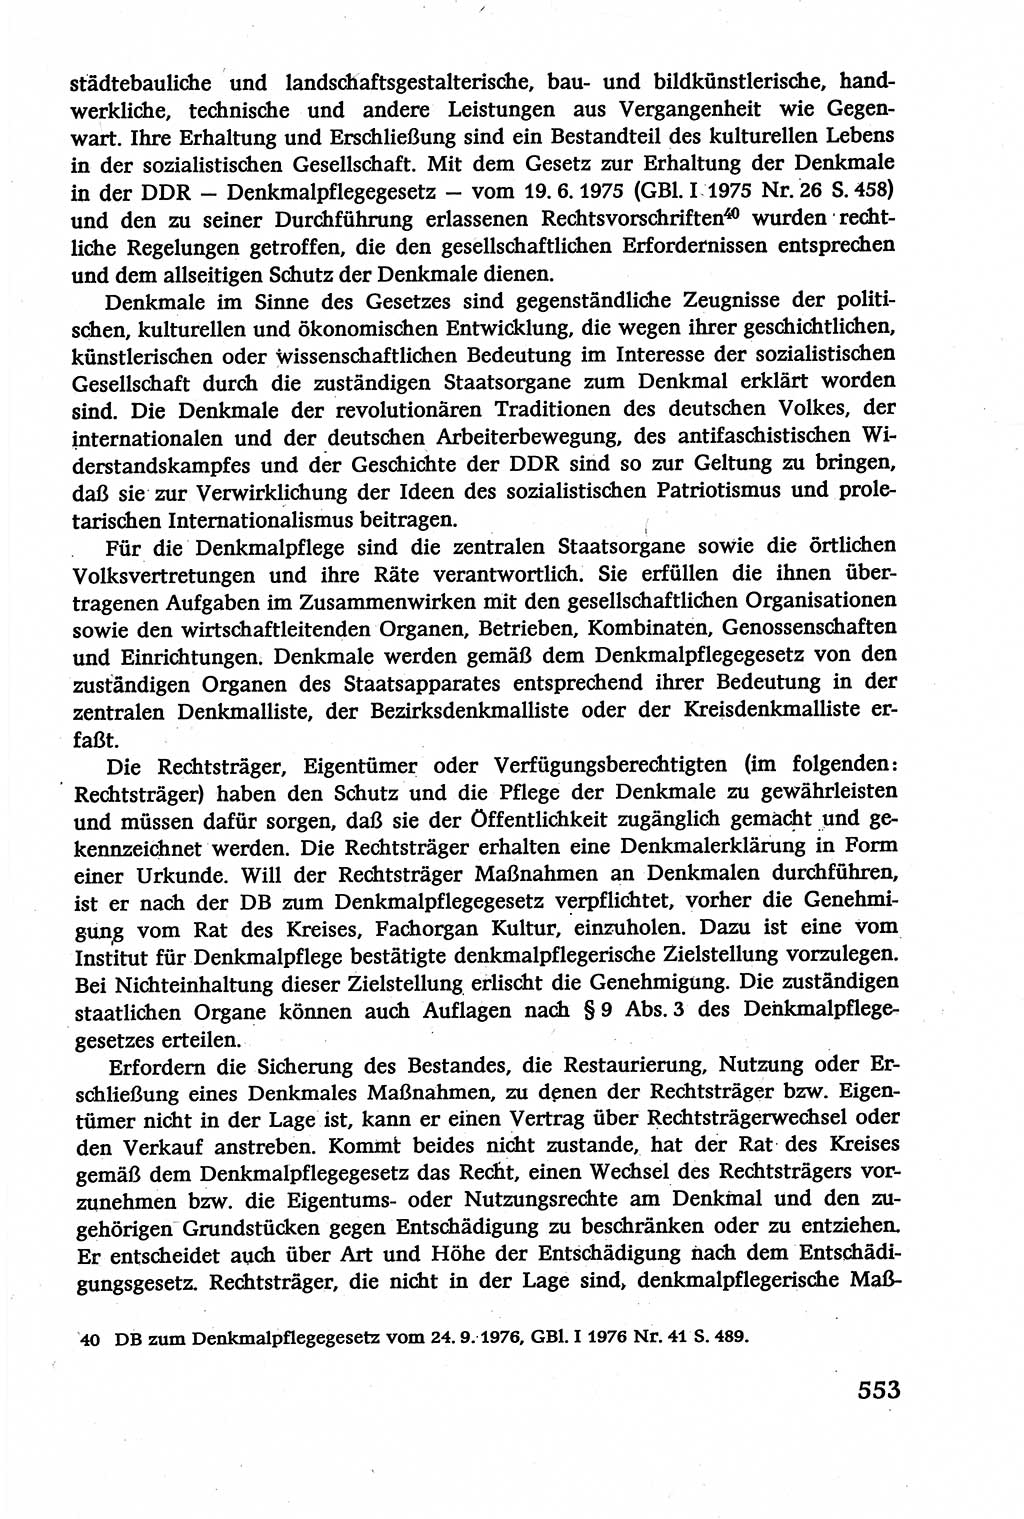 Verwaltungsrecht [Deutsche Demokratische Republik (DDR)], Lehrbuch 1979, Seite 553 (Verw.-R. DDR Lb. 1979, S. 553)